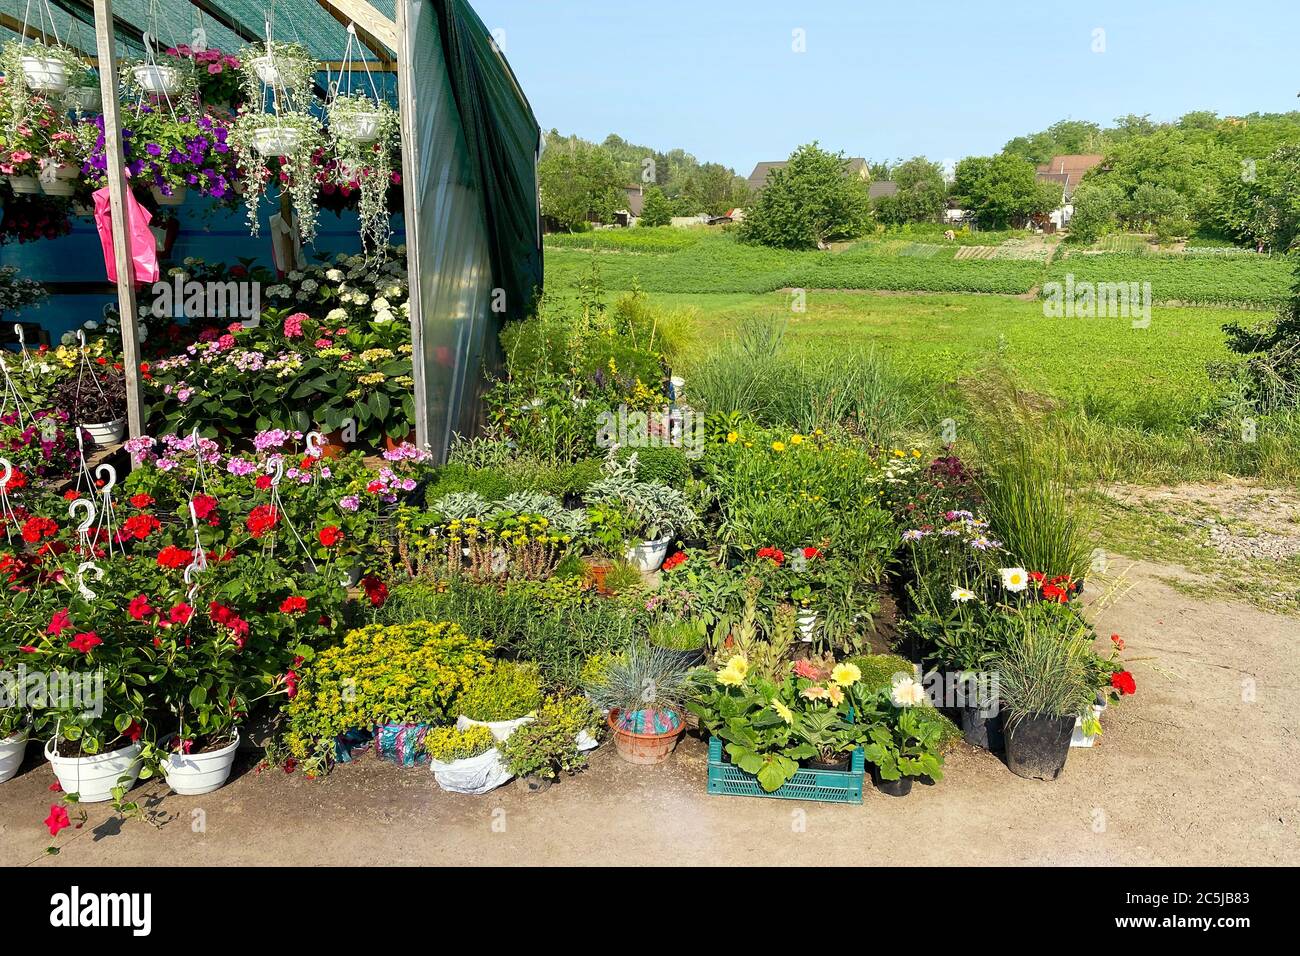 Les semis de plantes à fleurs diverses sont à vendre sur le marché local pour la décoration de la région. Boutique de jardin avec fleurs à l'extérieur. Banque D'Images